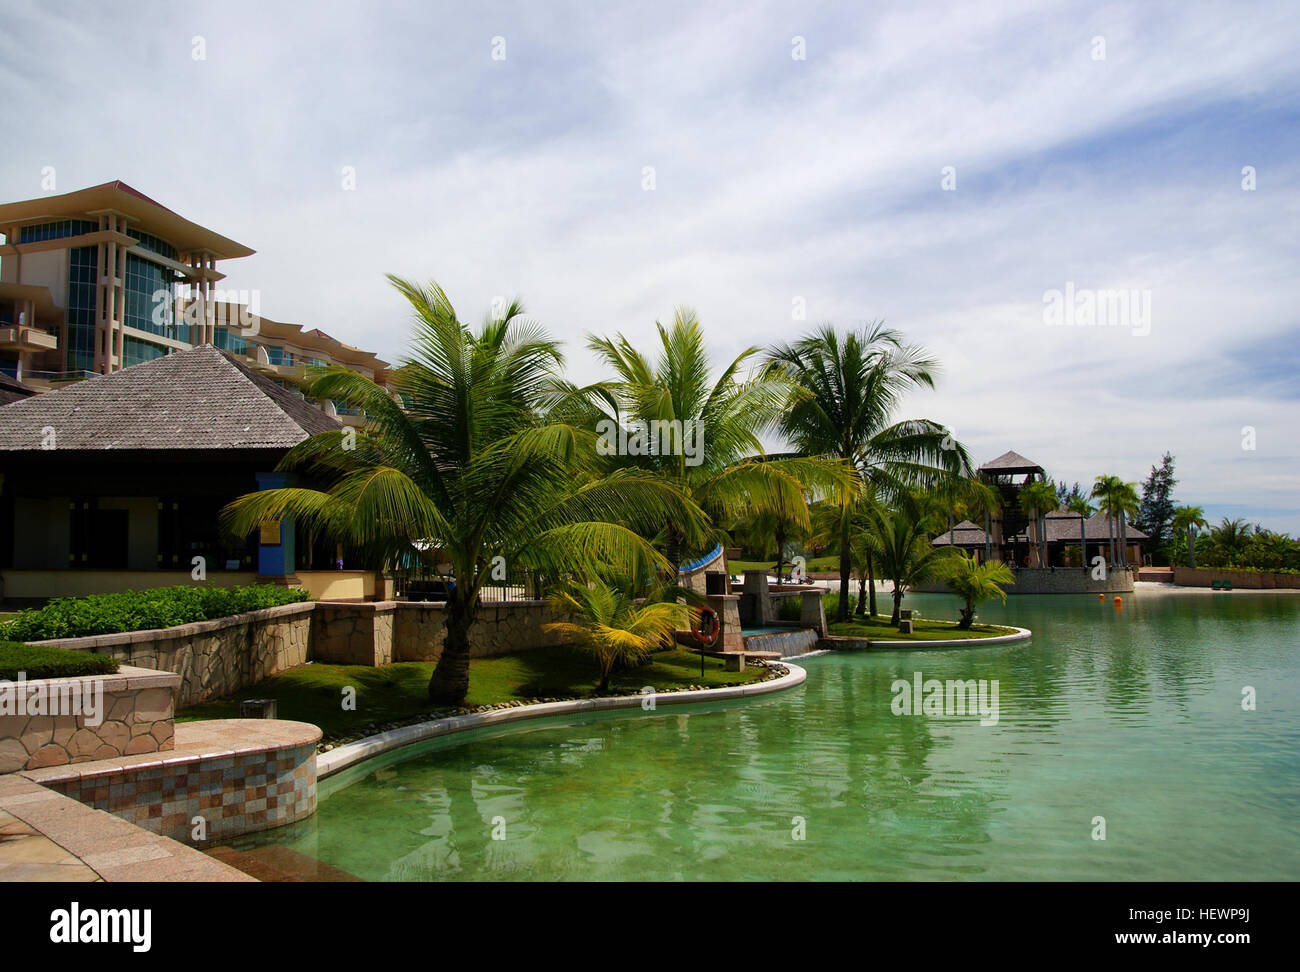 Das Empire Hotel &amp; Country Club ist Brunei renommiertesten und luxuriöse Beach Resort. Bandar Seri Begawan Hotels bietet fantastische Aussicht auf das Meer, Lagunen. Stockfoto